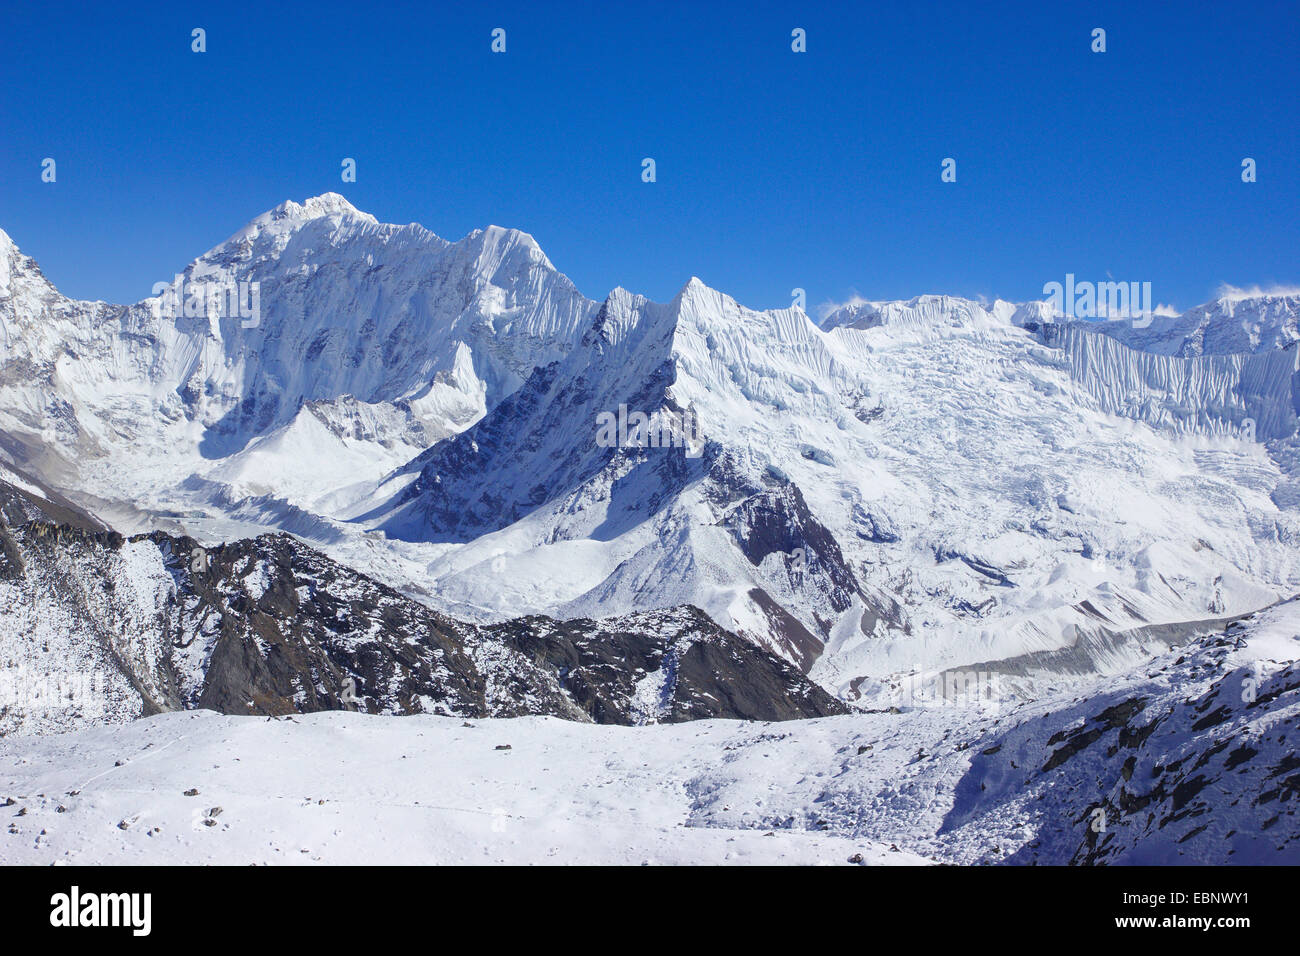 Vista desde Los Ángeles a Kongma Chhukhung Baruntse y glaciar, Nepal, Himalaya, Khumbu Himal Foto de stock